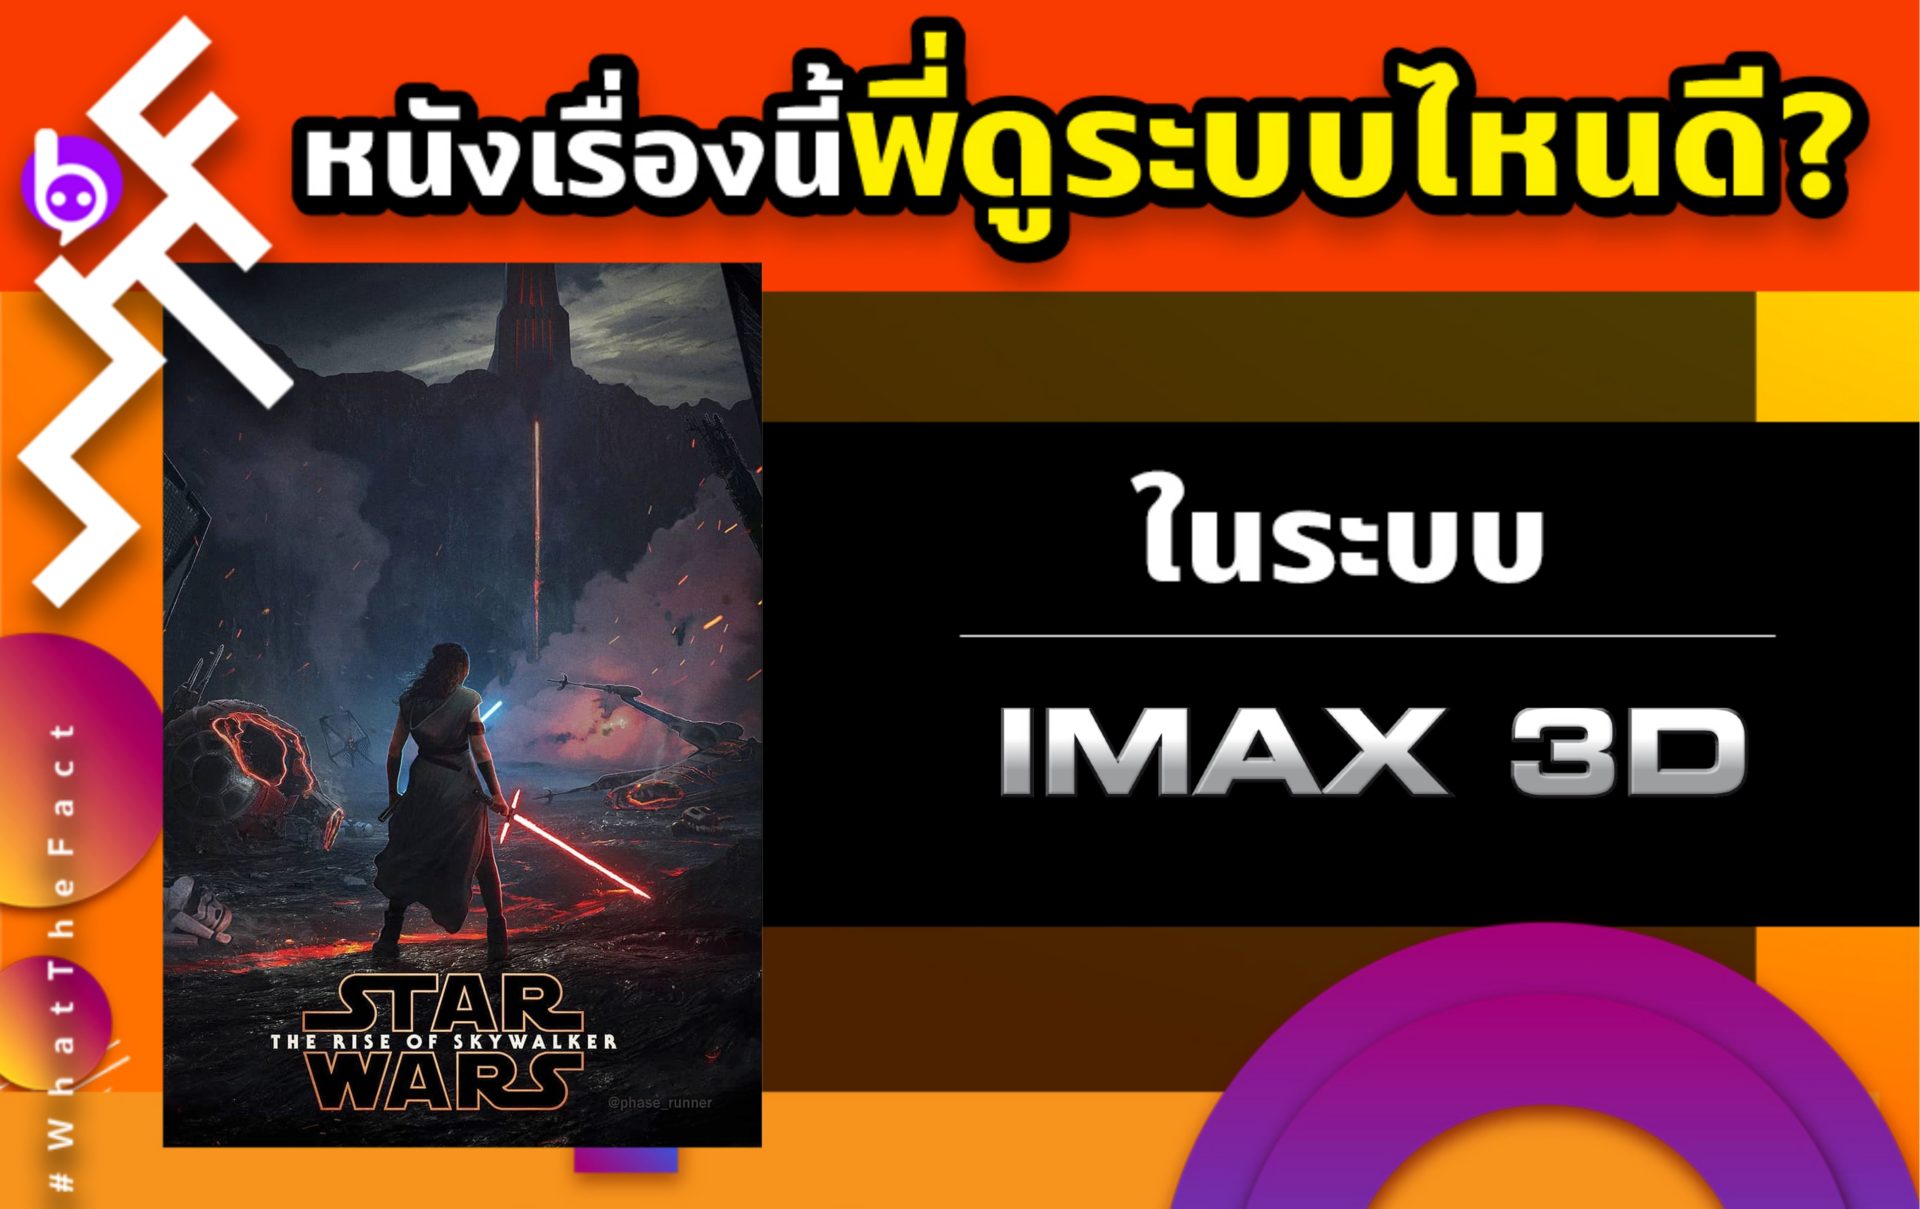 หนังเรื่องนี้พี่ดูระบบไหนดี STAR WARS : The Rise of Skywalker ในระบบ IMAX3D